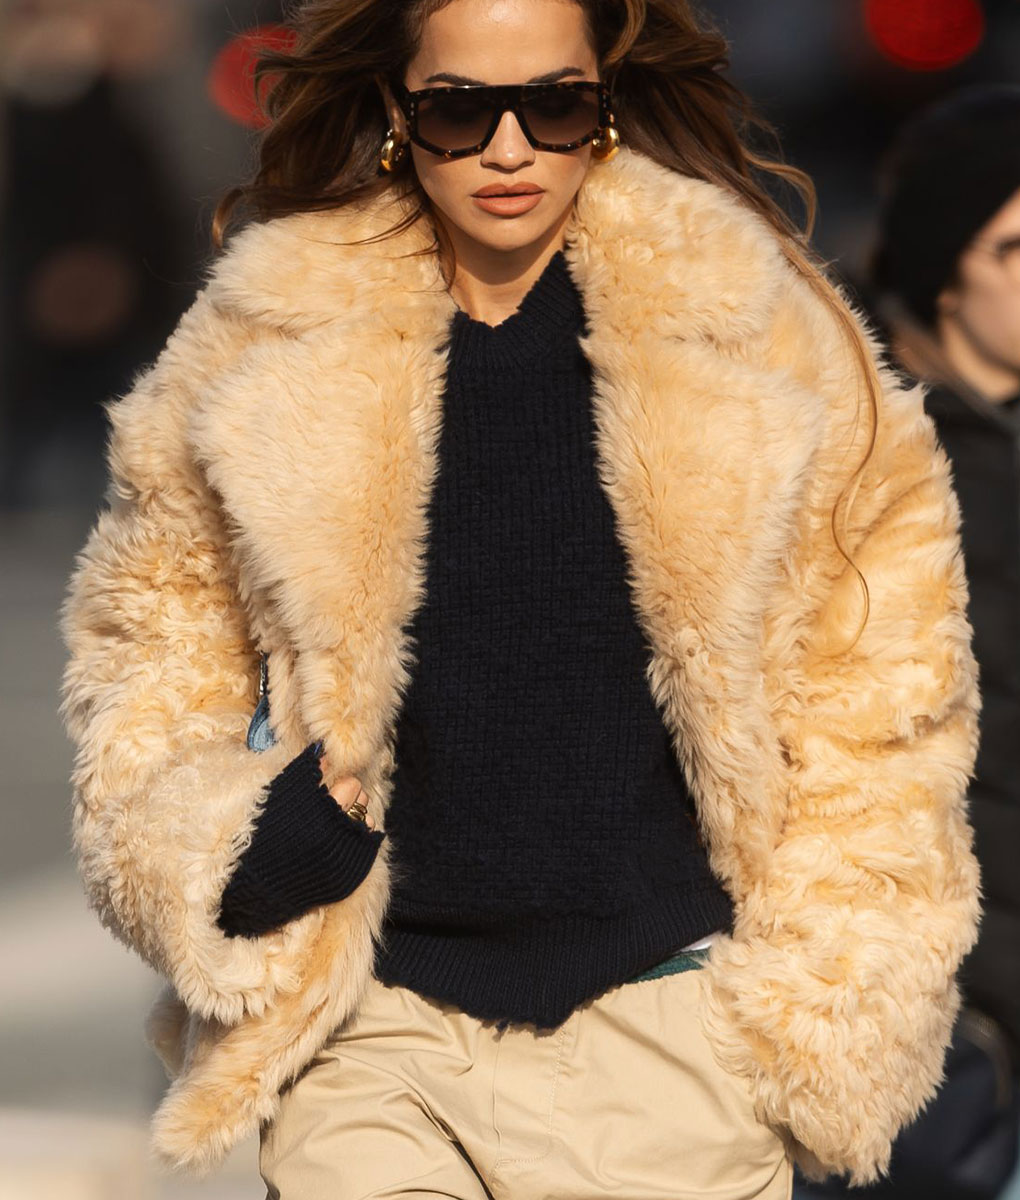 Rita Ora Brown Fur Jacket (3)